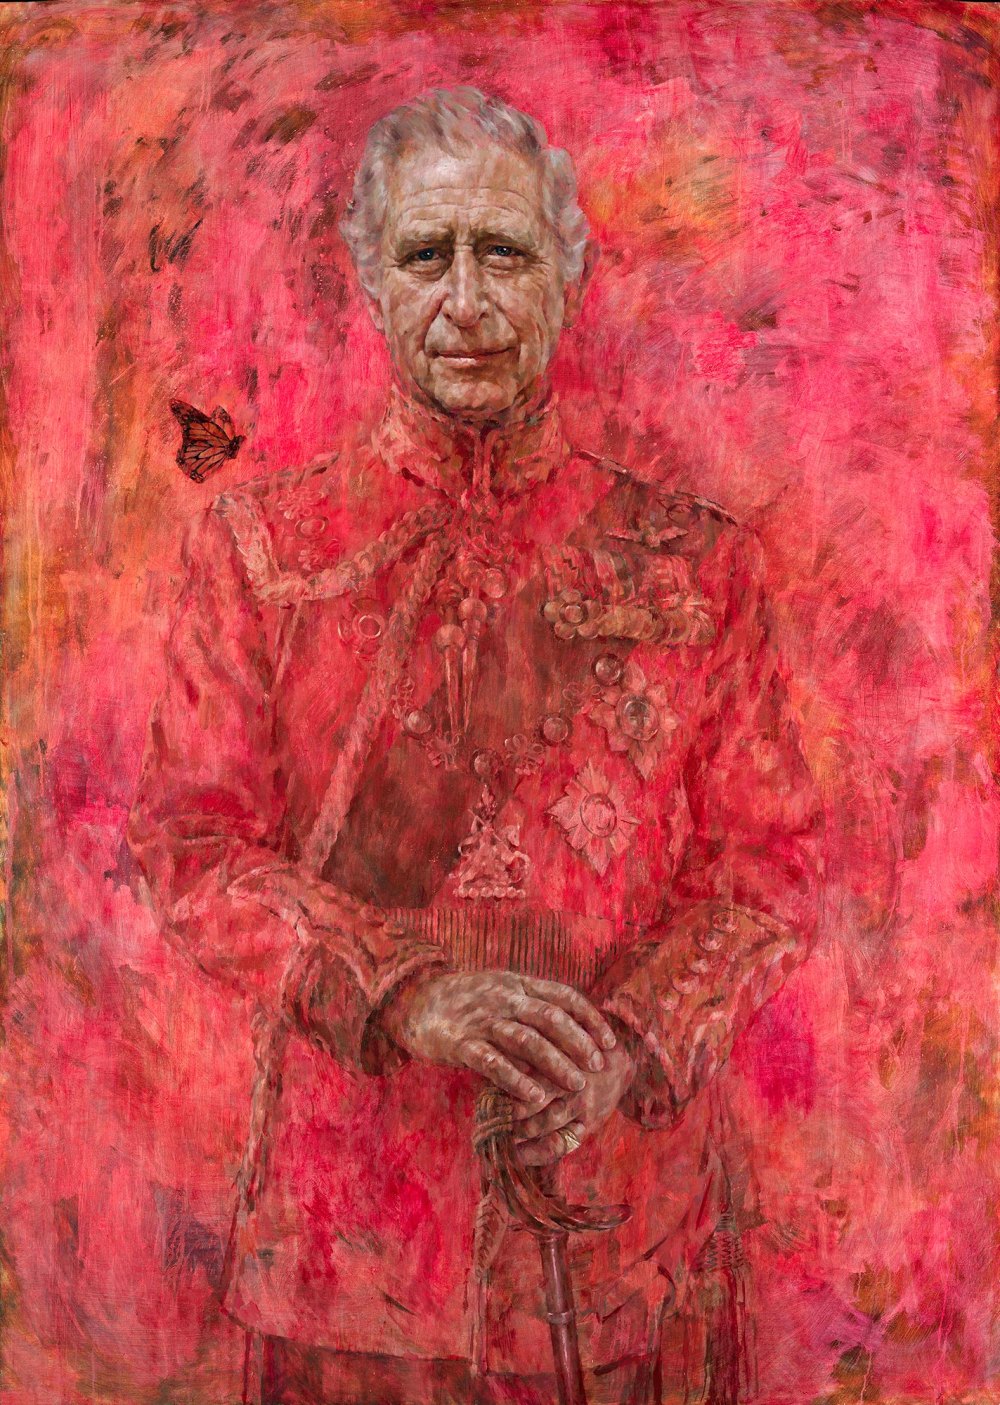 Artista do rei Charles explica por que escolheu o vermelho em novo retrato